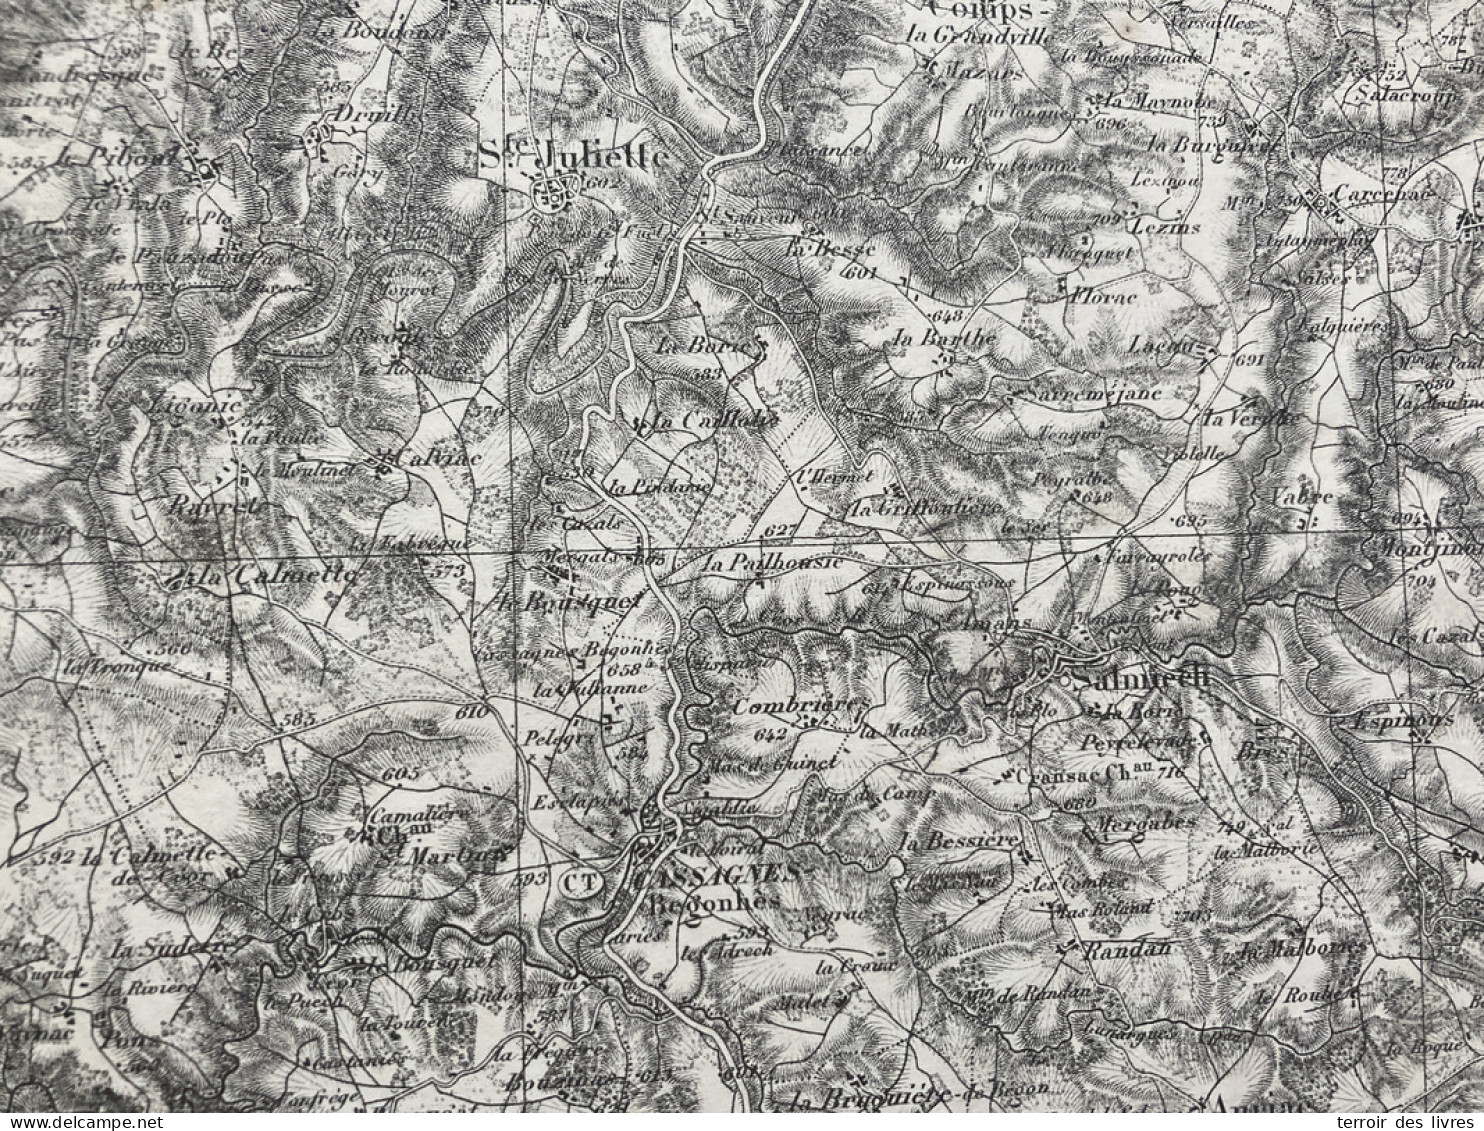 Carte état Major RODEZ S.E. 1893 35x54cm SAINTE JULIETTE SUR VIAUR CALMONT COMPS-LA-GRAND-VILLE CASSAGNES-BEGONHES SALMI - Geographical Maps